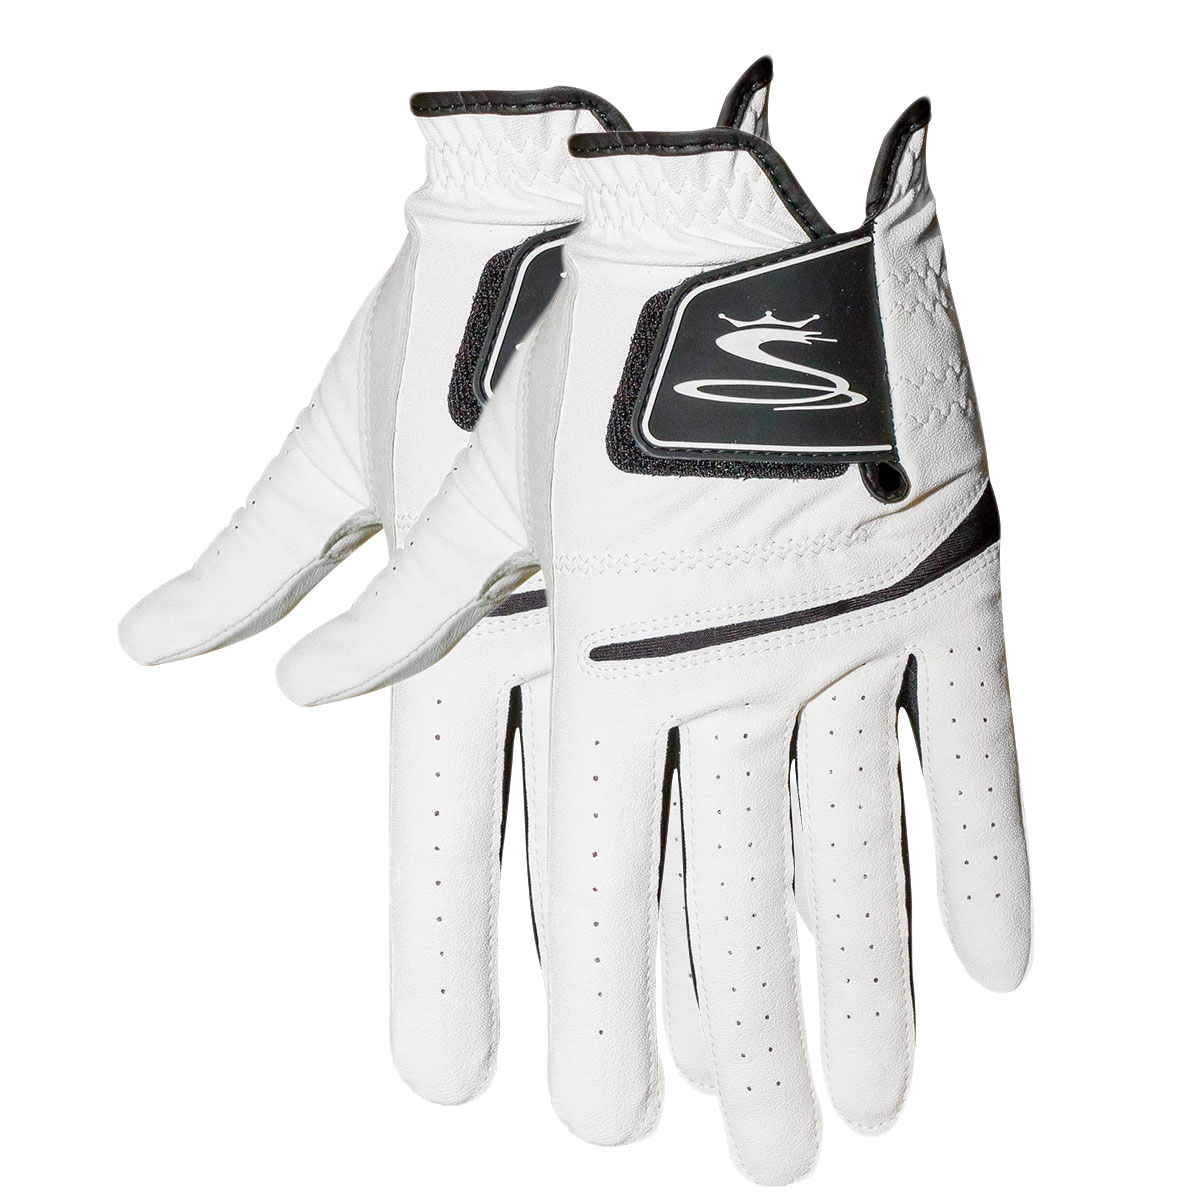 Cobra Men’s Golf Flex Cell Glove – 2 pack - White/Black